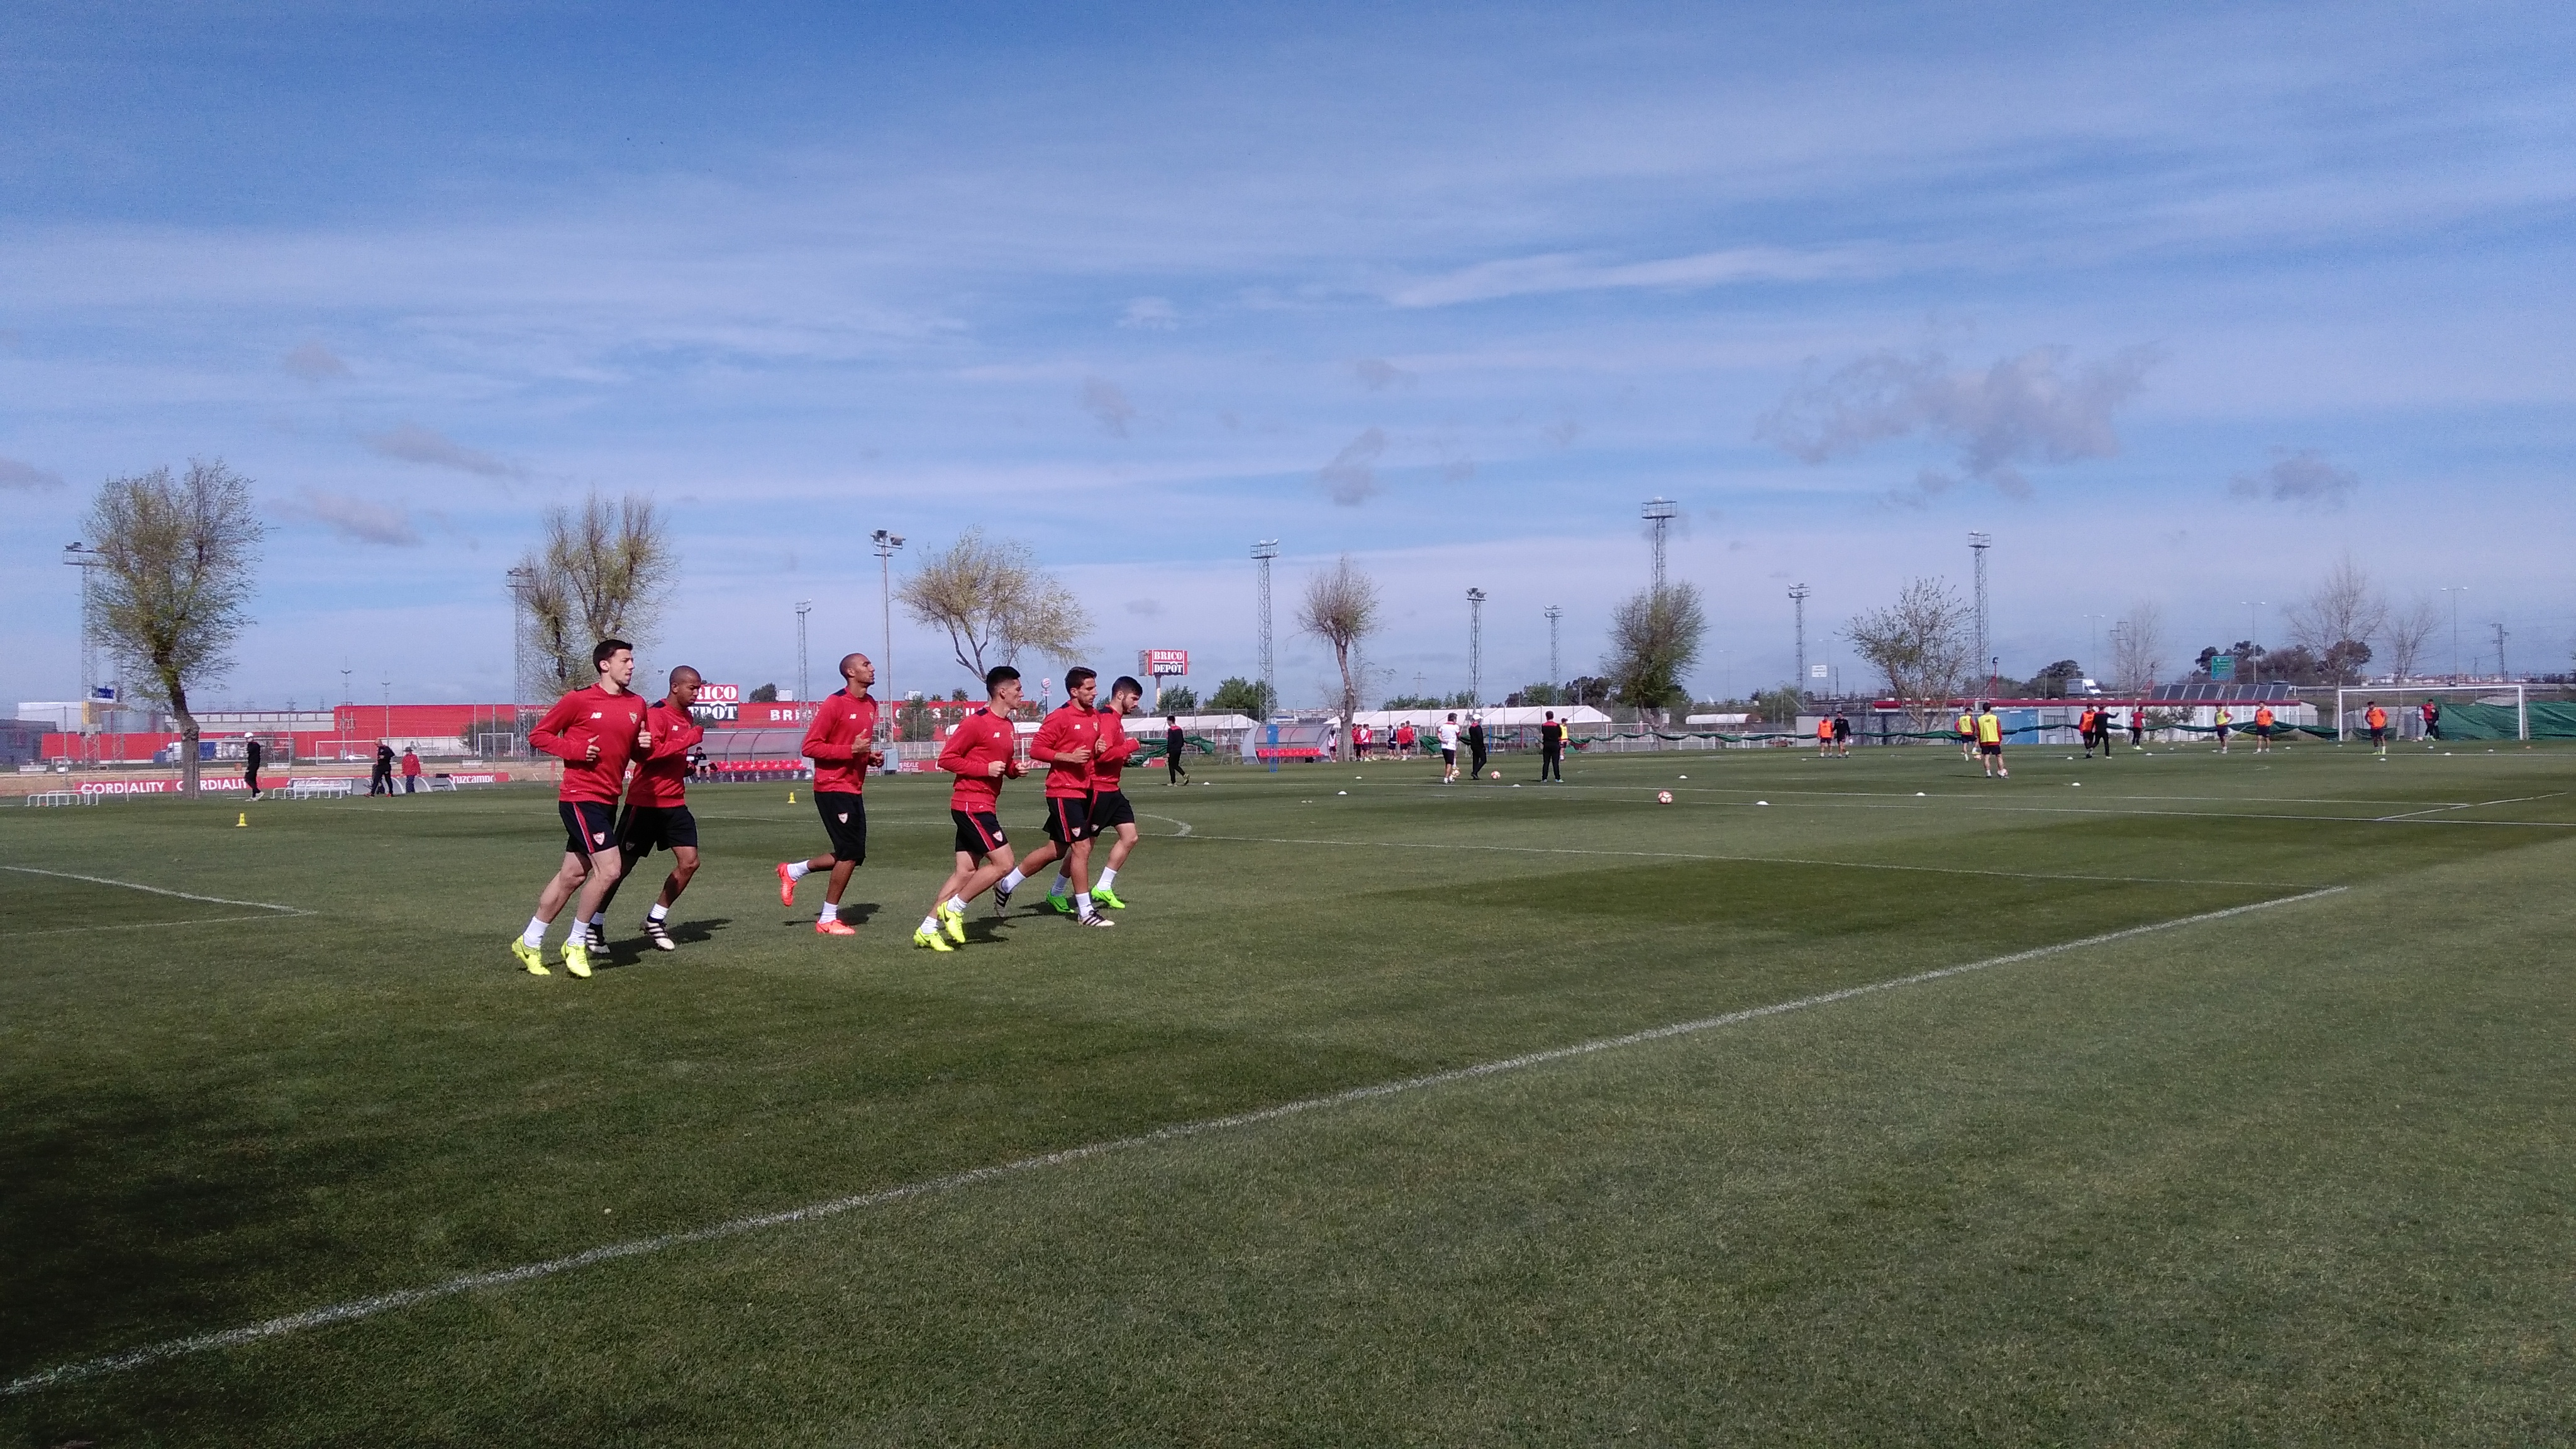 Sevilla FC training session